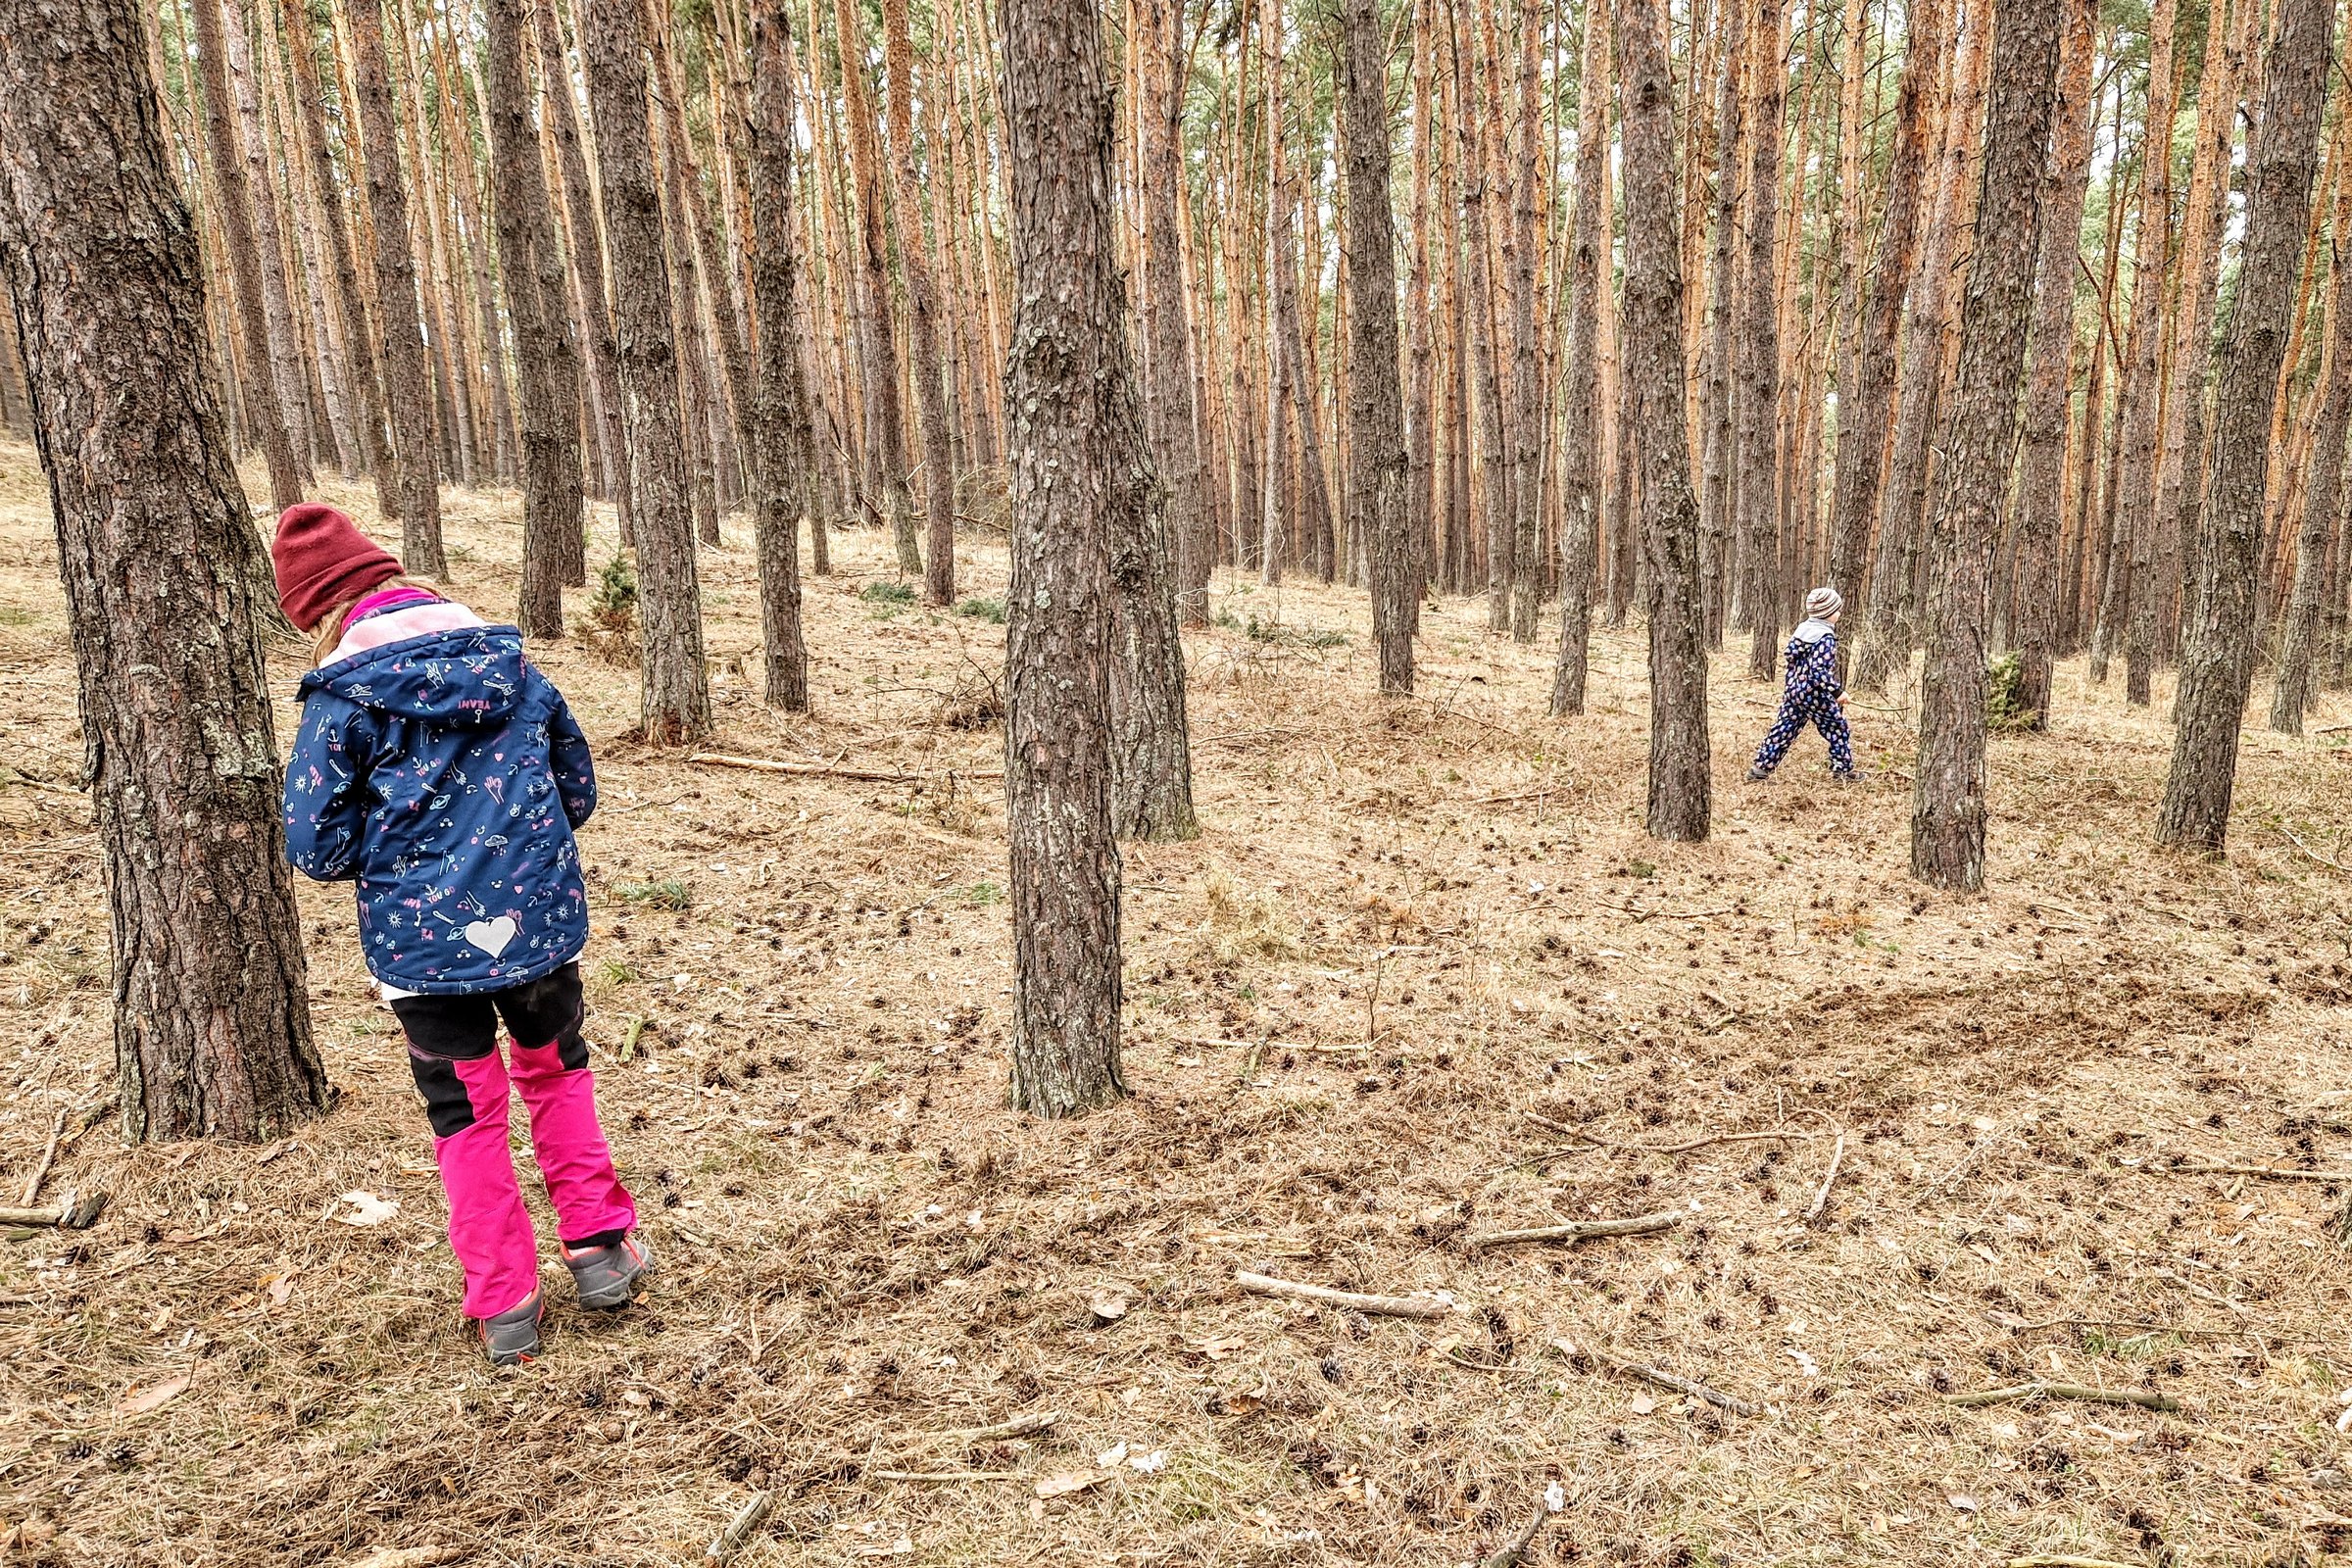 Diákok ismerkednek az erdővel, közben díjakat is nyerhetnek